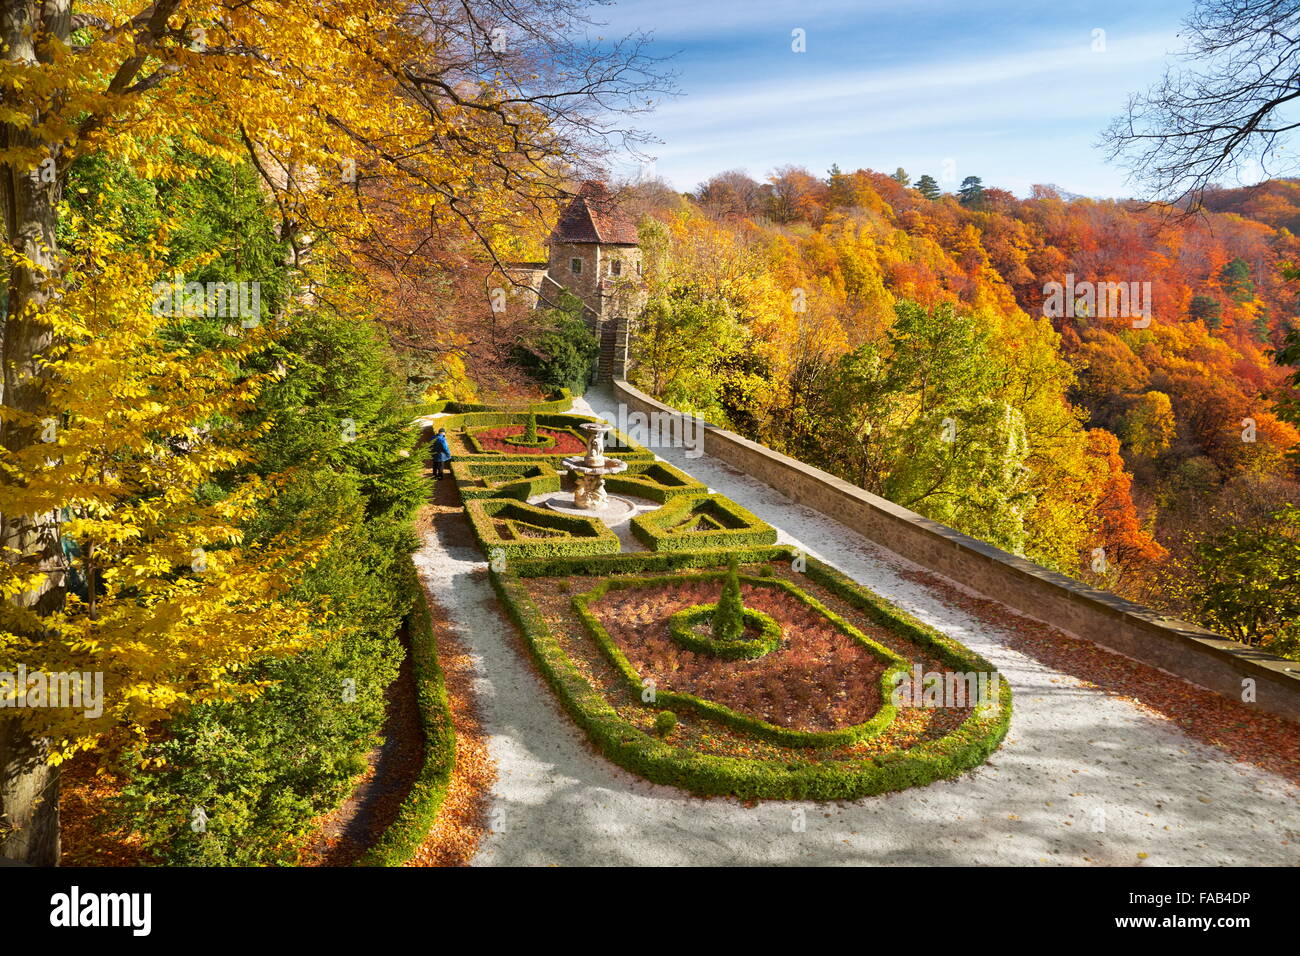 Ksiaz castle - autumn garden, Sudeten mountains, Silesia, Poland Stock Photo